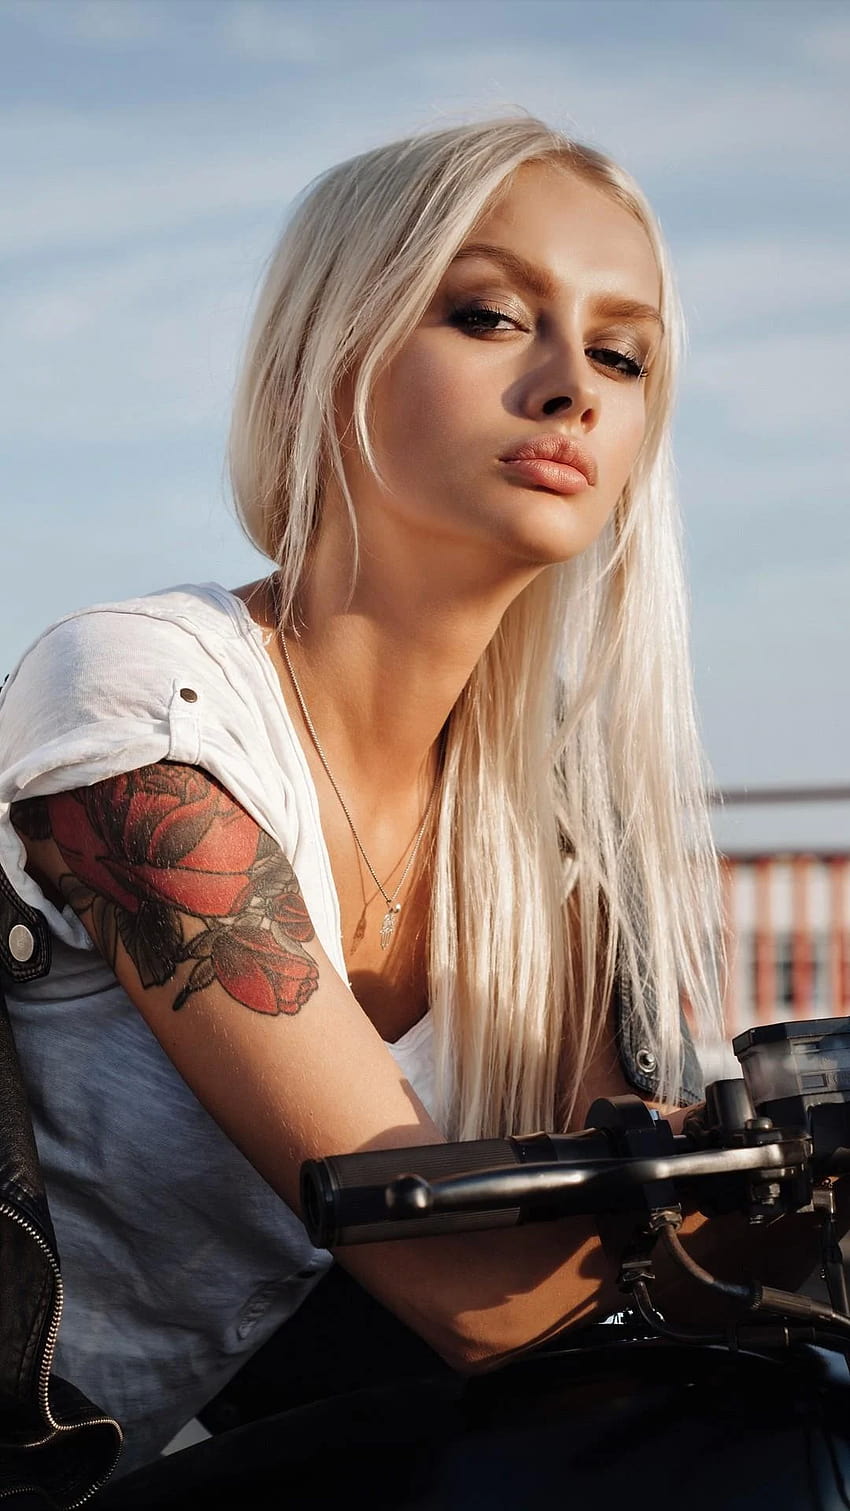 1080x1920 Ragazza tatuata su moto Iphone 7,6s, 6 Plus, ragazza tatuata iphone Sfondo del telefono HD